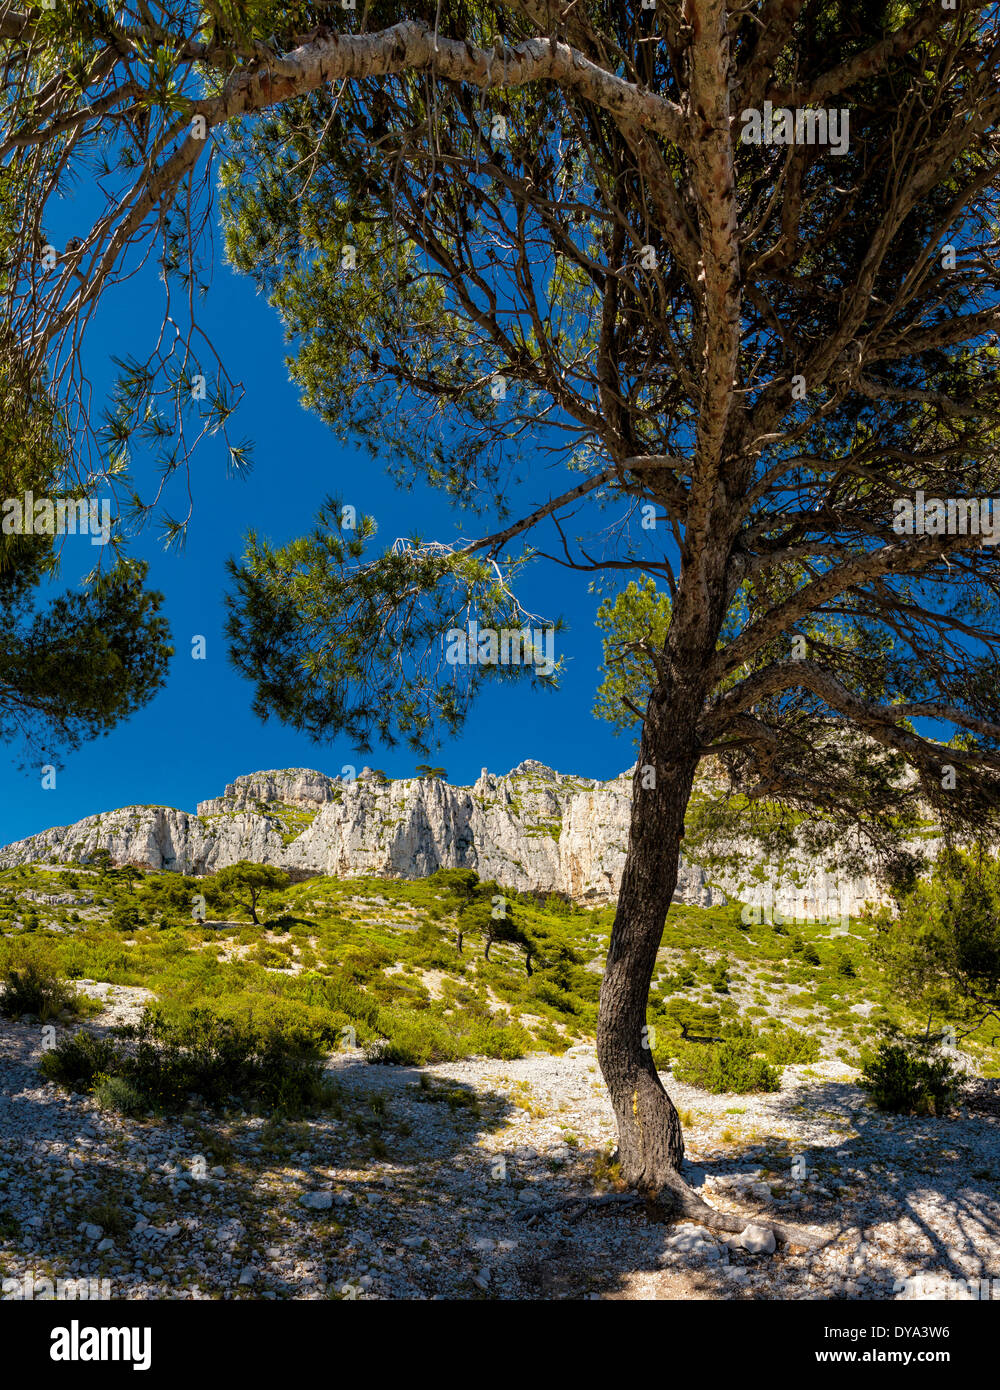 Foret Domaniale de la GARDIOLE paisaje de árboles forestales verano montañas colinas Cassis Bouches du Rhone Francia Europa, Foto de stock